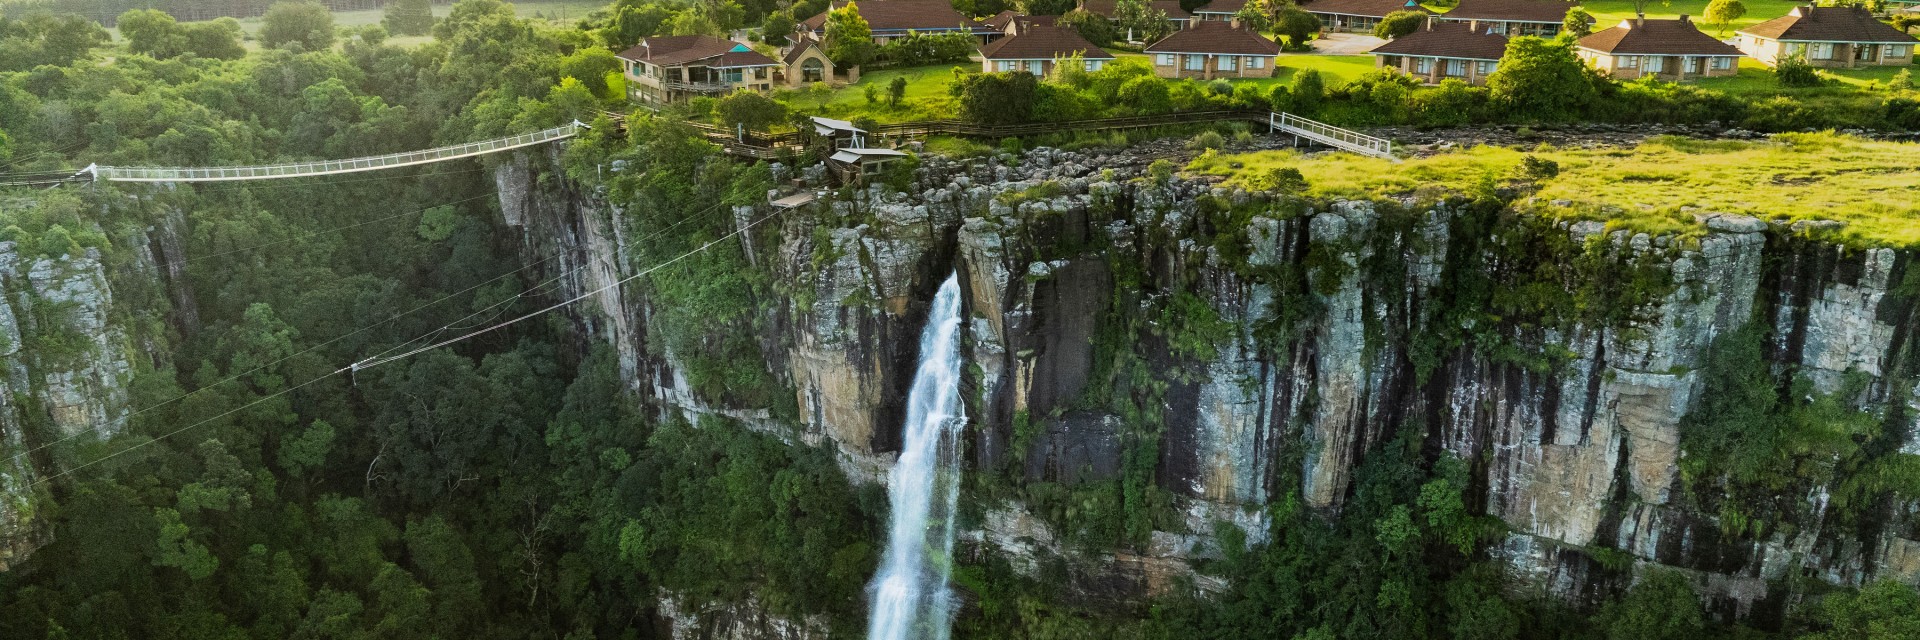 Mogodi Lodge Waterfall 